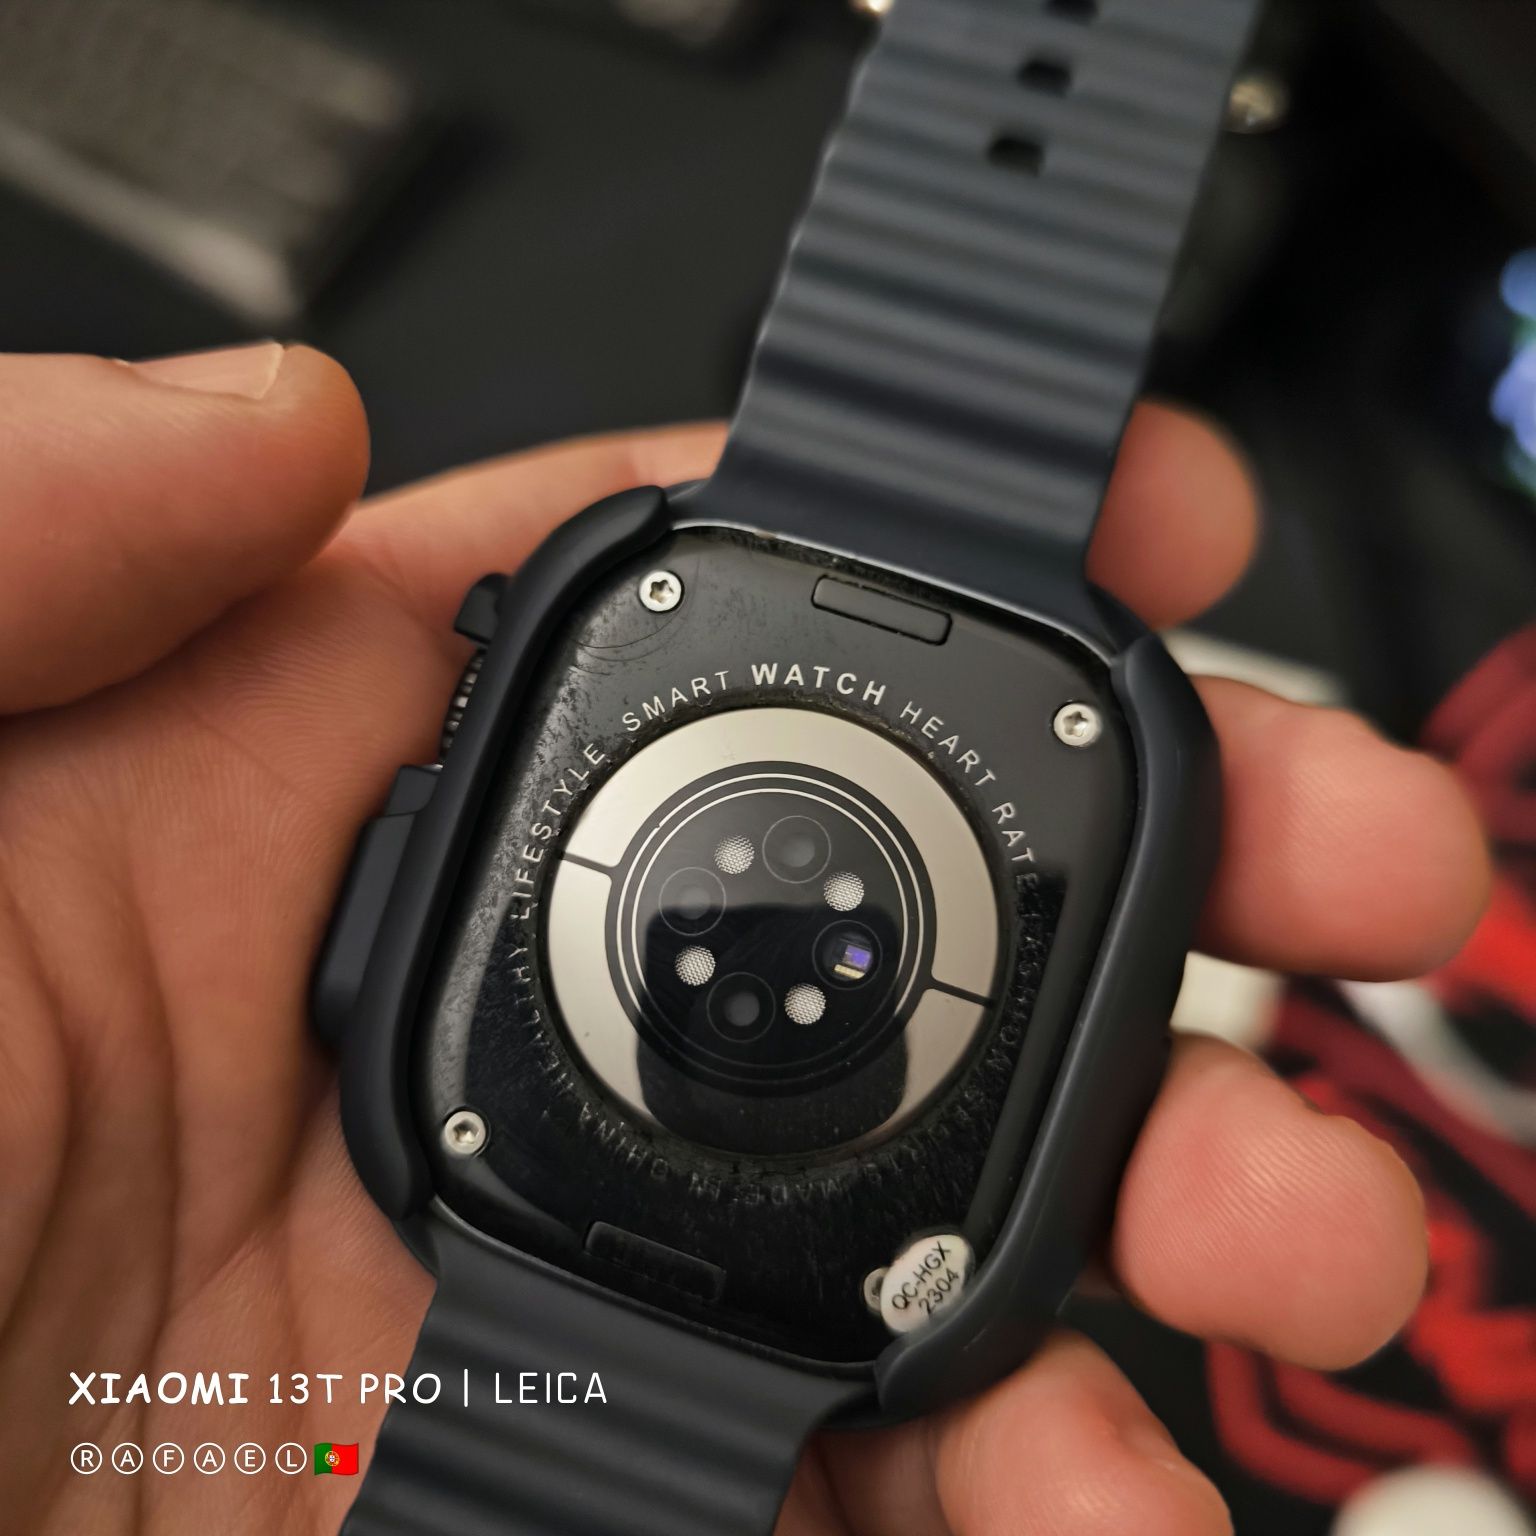 DT8 Ultra Max: conheça o relógio inteligente que combina elegância